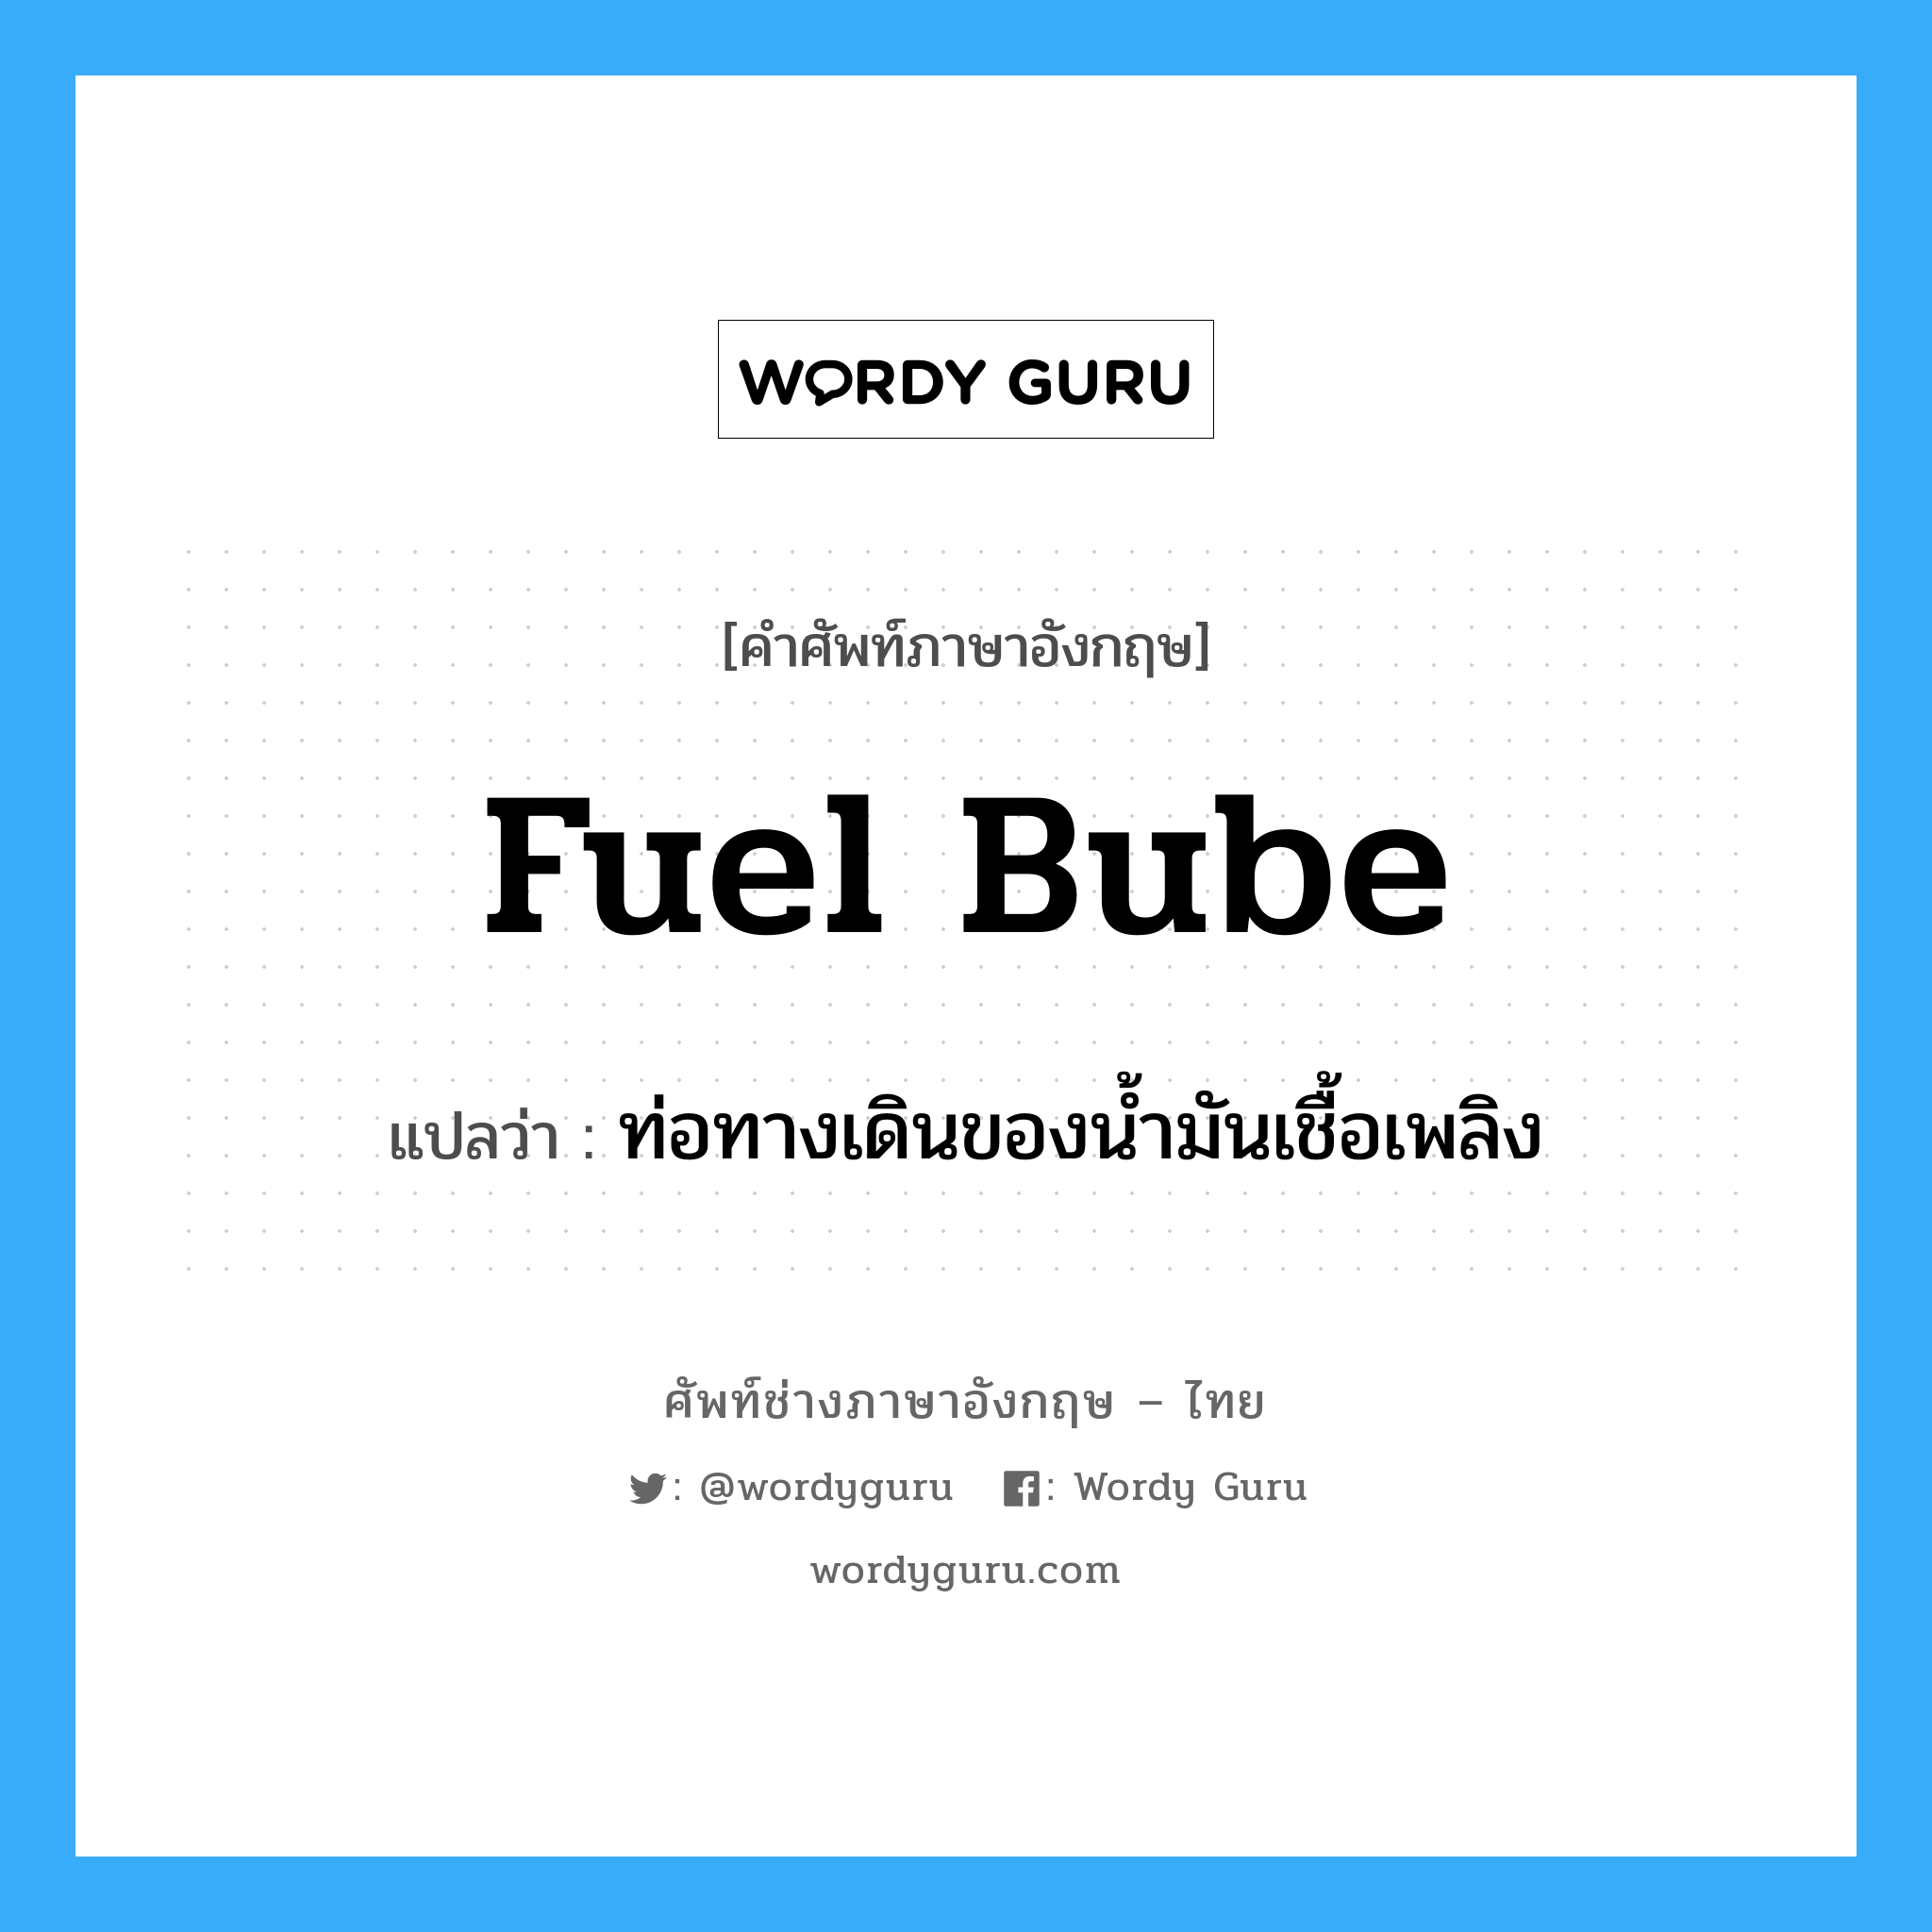 fuel bube แปลว่า?, คำศัพท์ช่างภาษาอังกฤษ - ไทย fuel bube คำศัพท์ภาษาอังกฤษ fuel bube แปลว่า ท่อทางเดินของน้ำมันเชื้อเพลิง